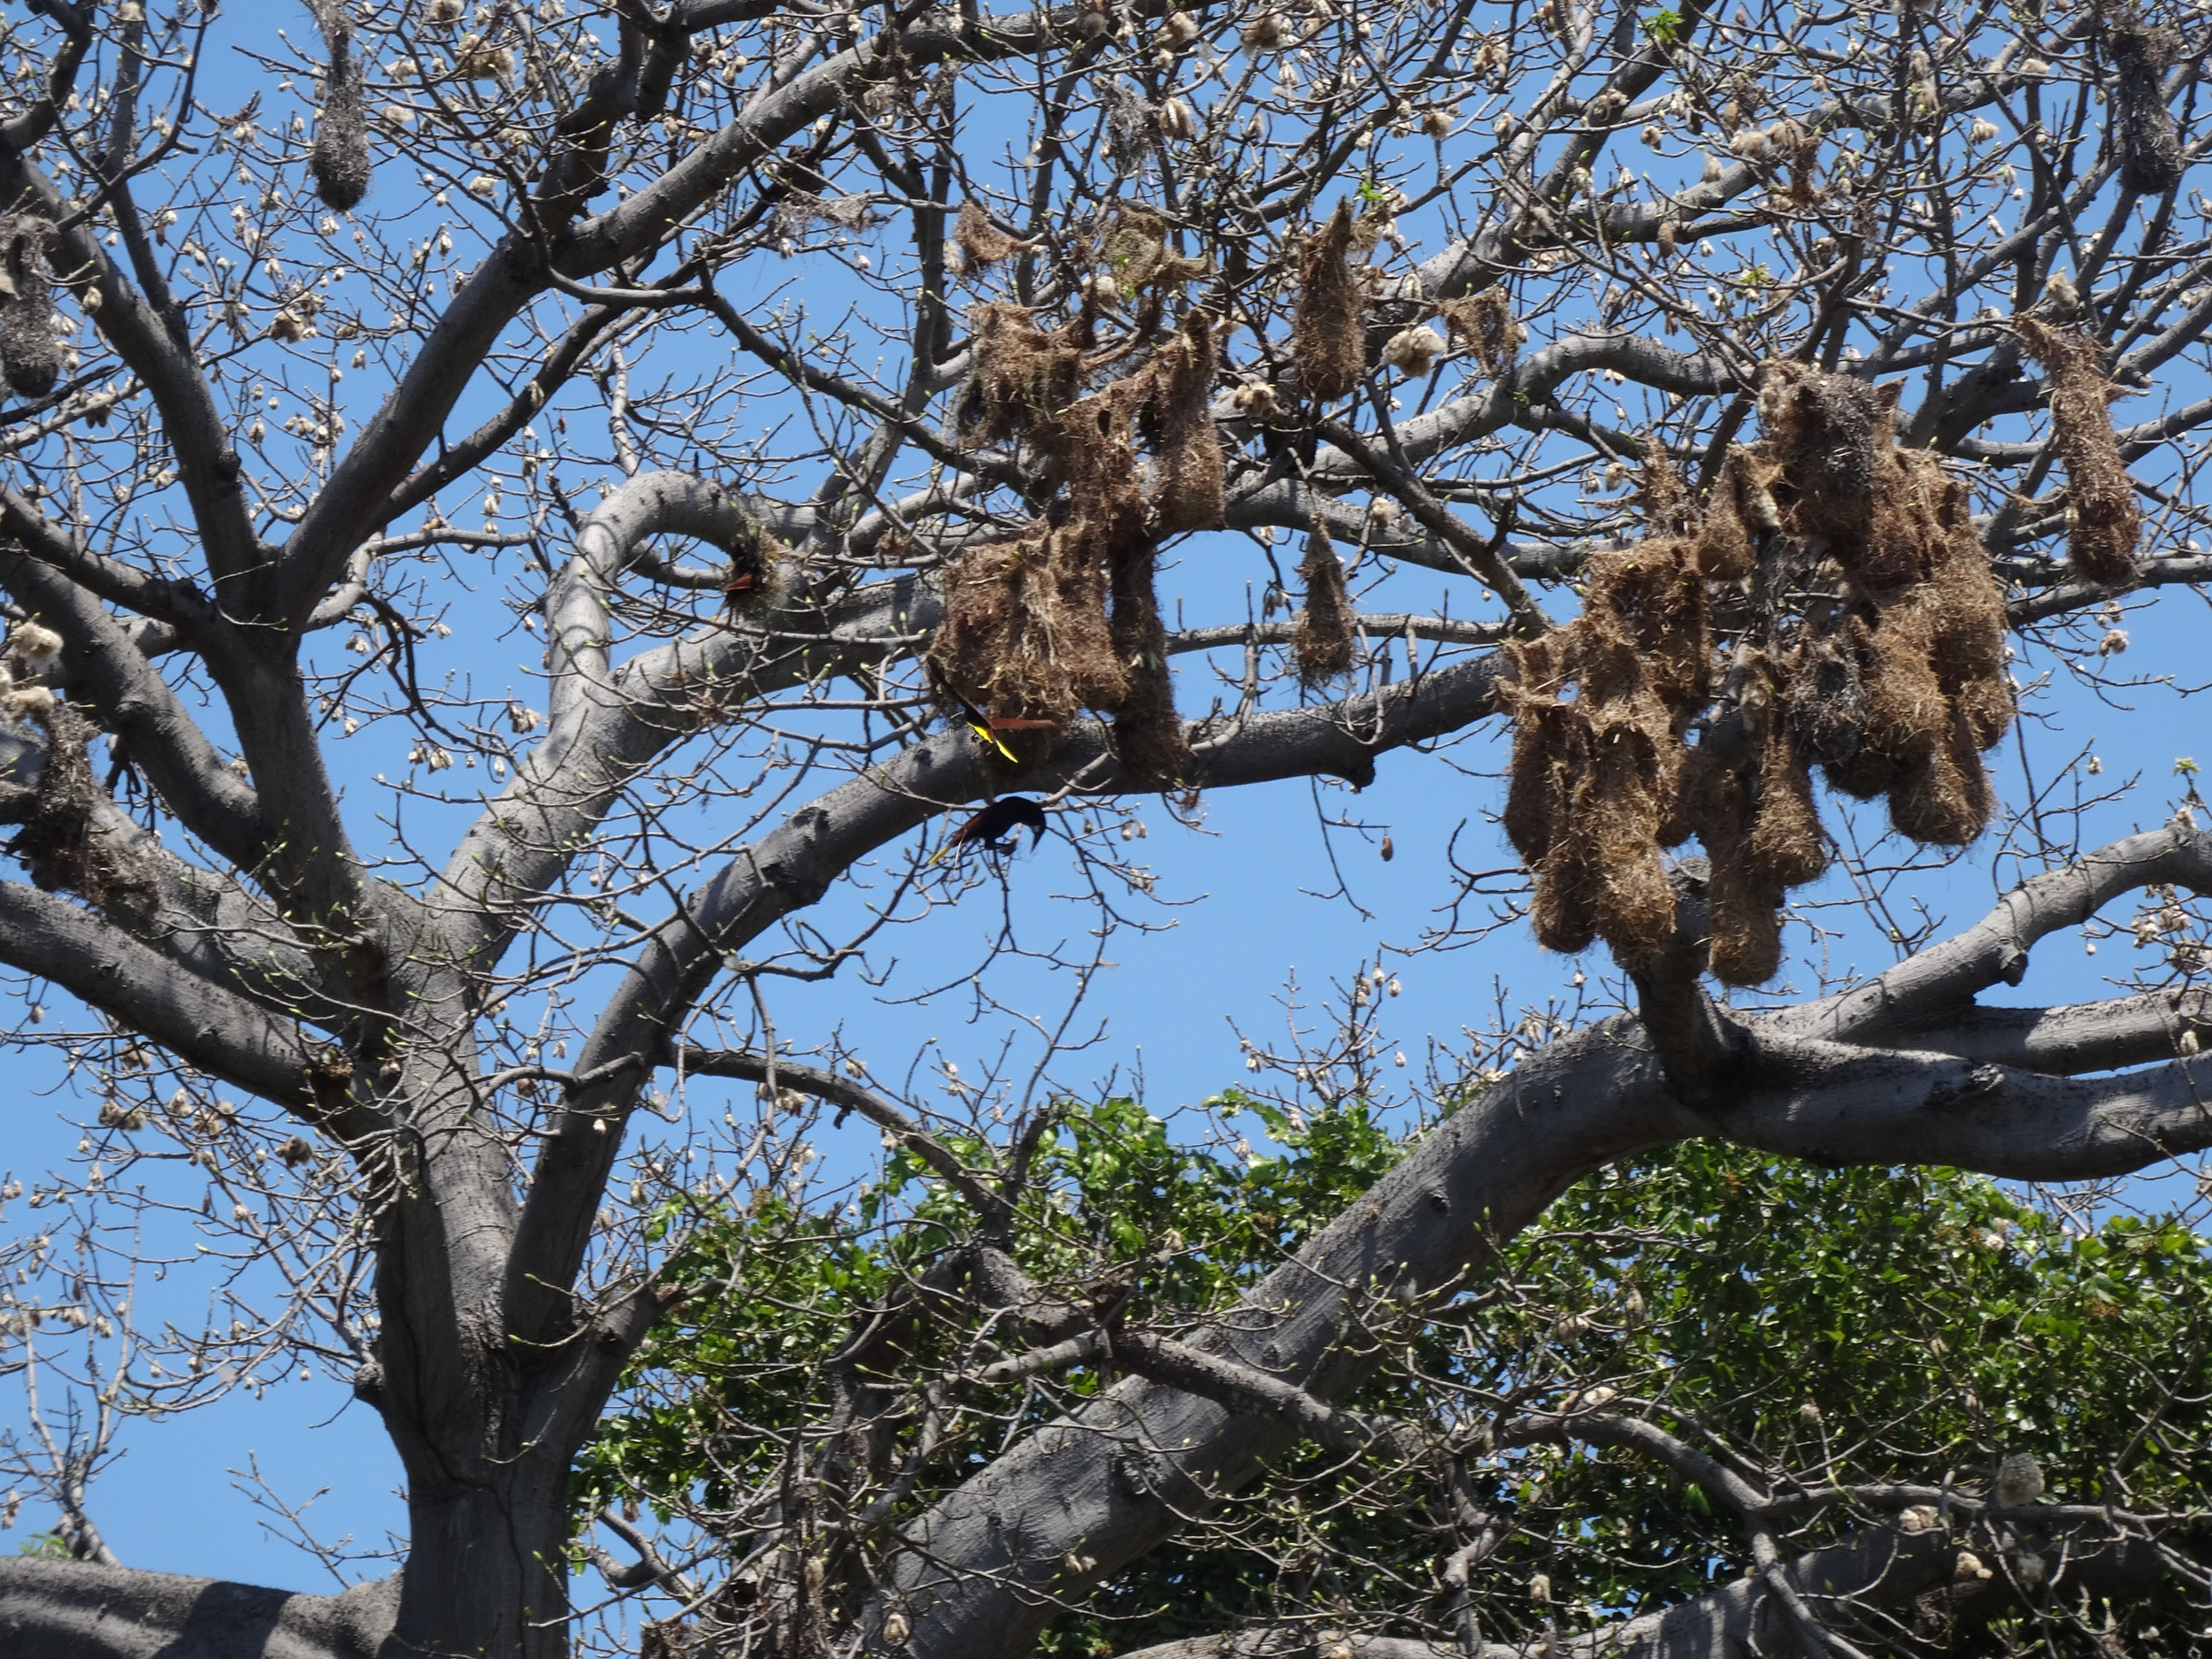 15. Oropendola nests, Las Isletas